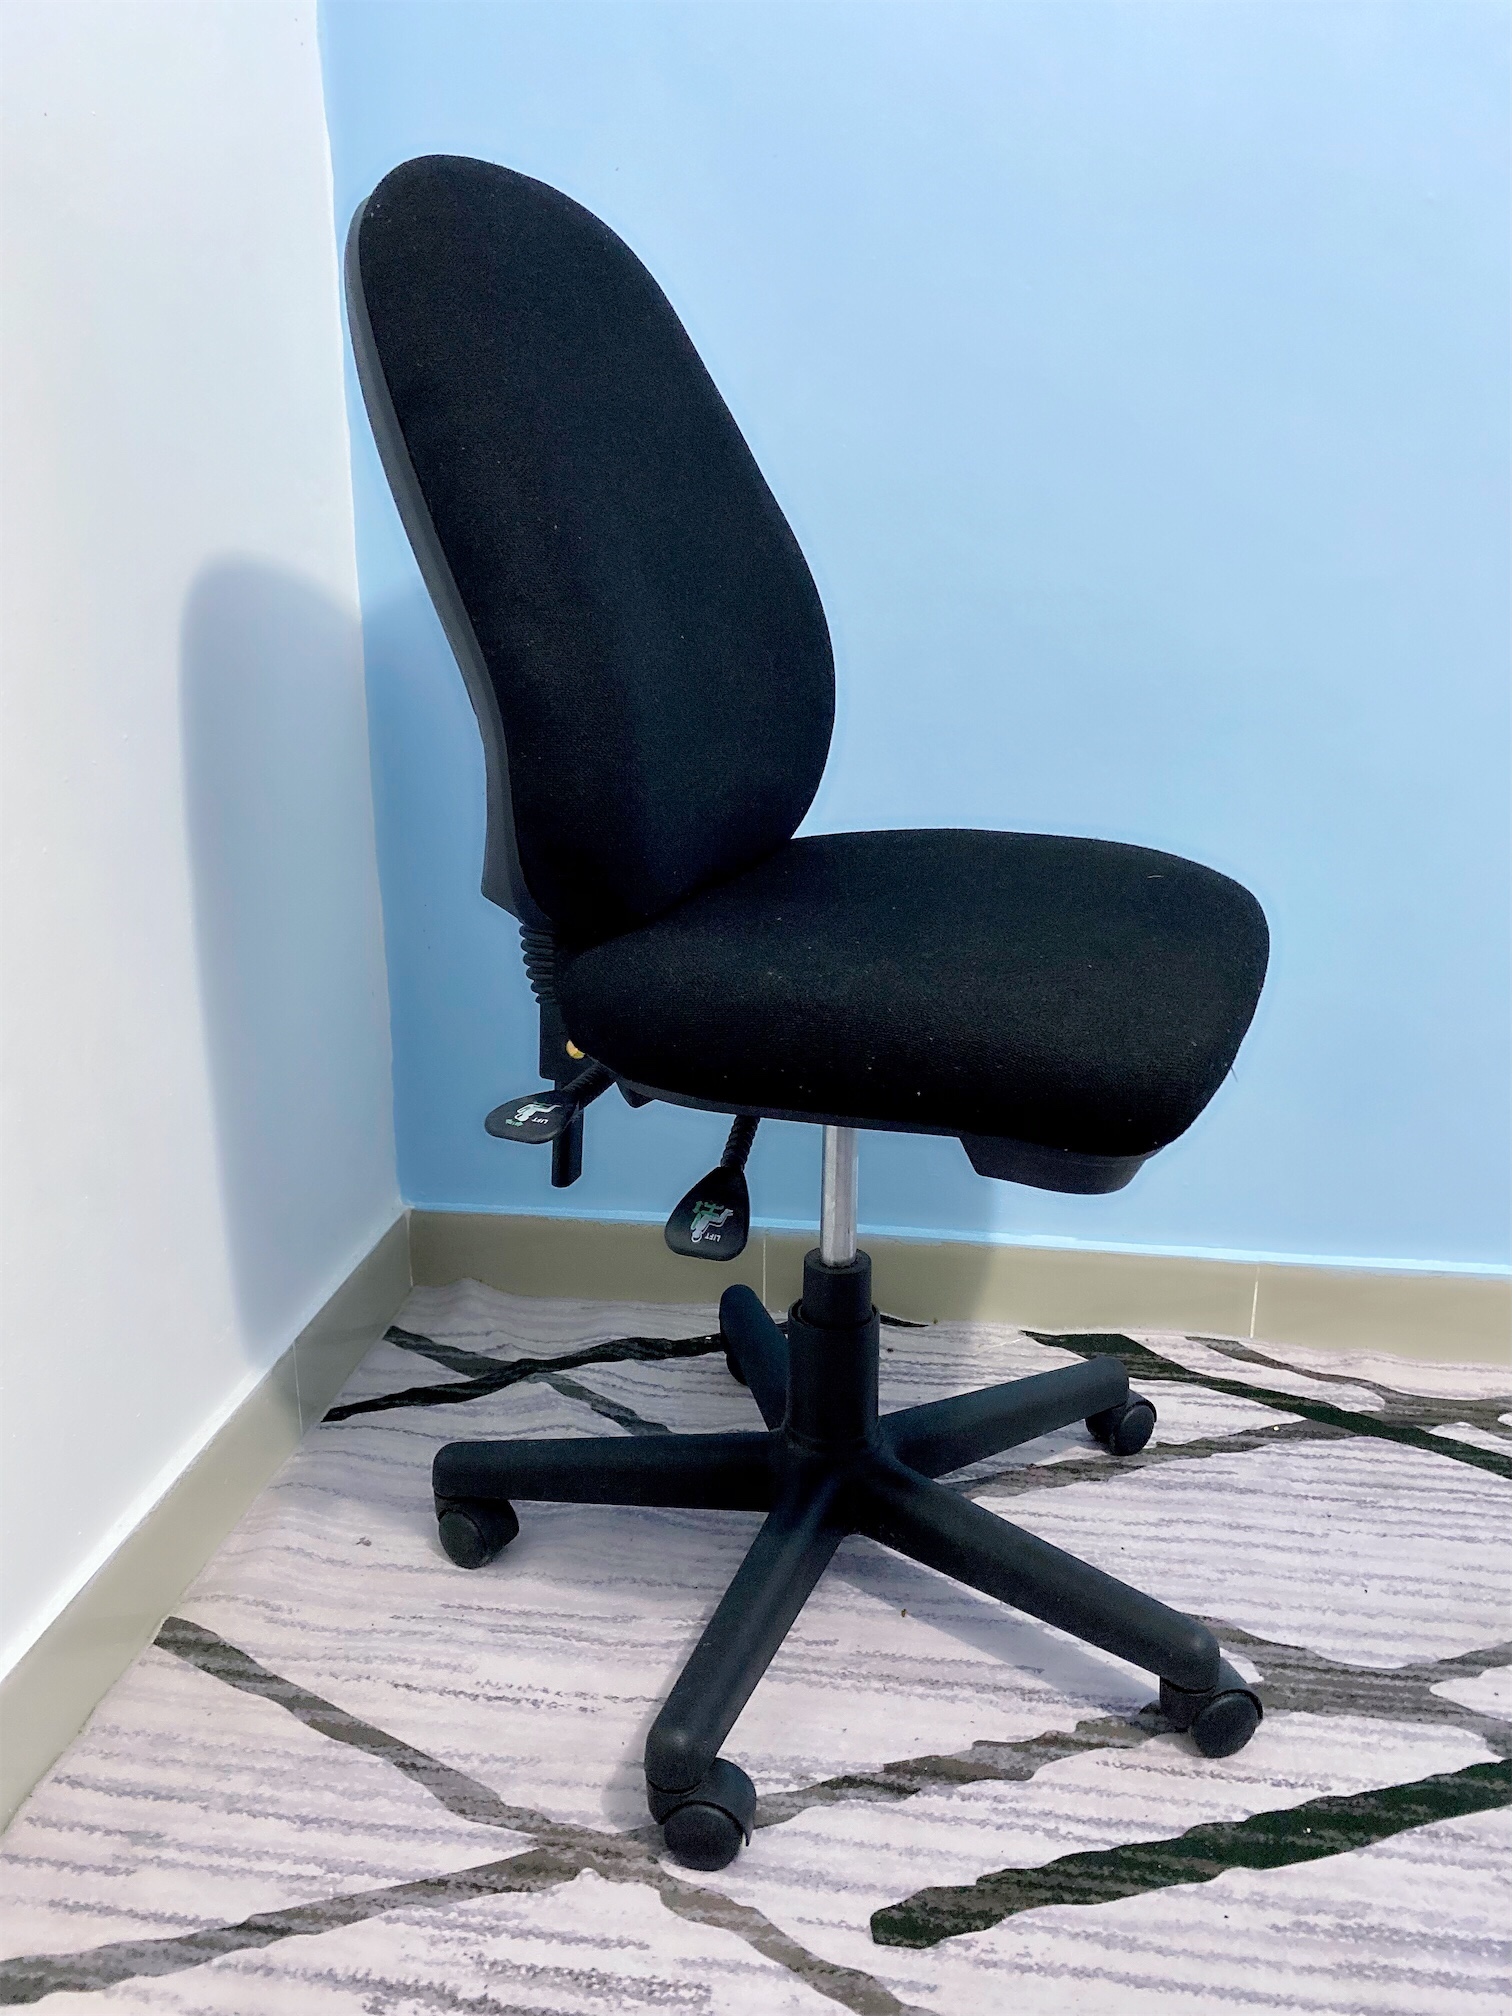 articulos de oficina - Vendo silla de escritorio confortable y a bajo costo.